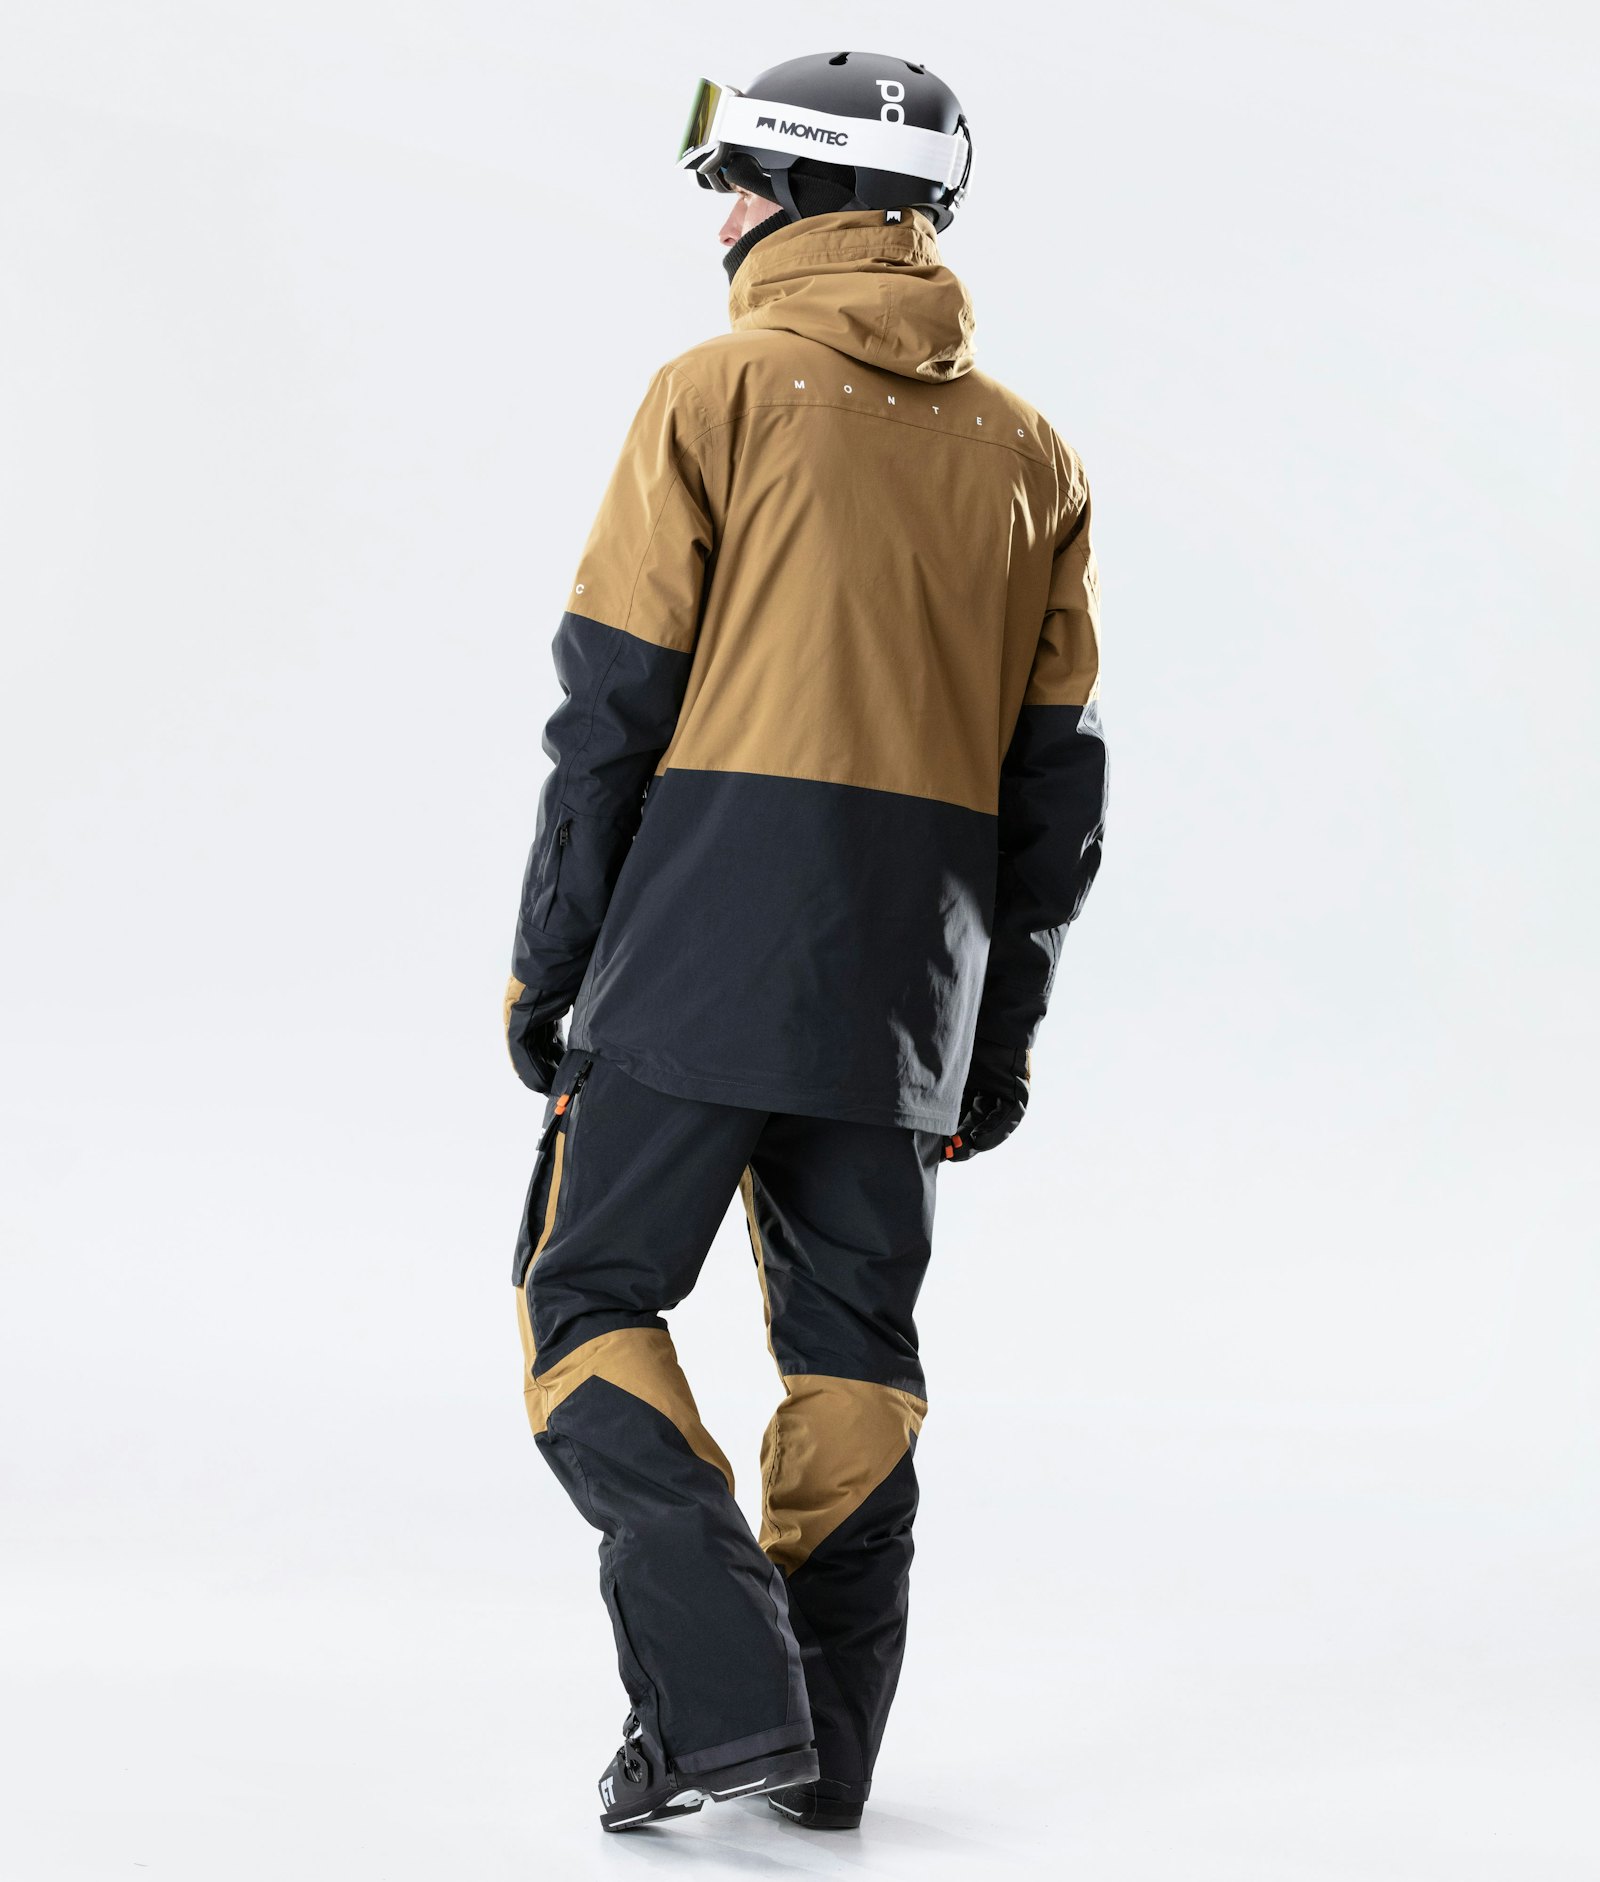 Fawk 2020 Ski Jacket Men Gold/Black